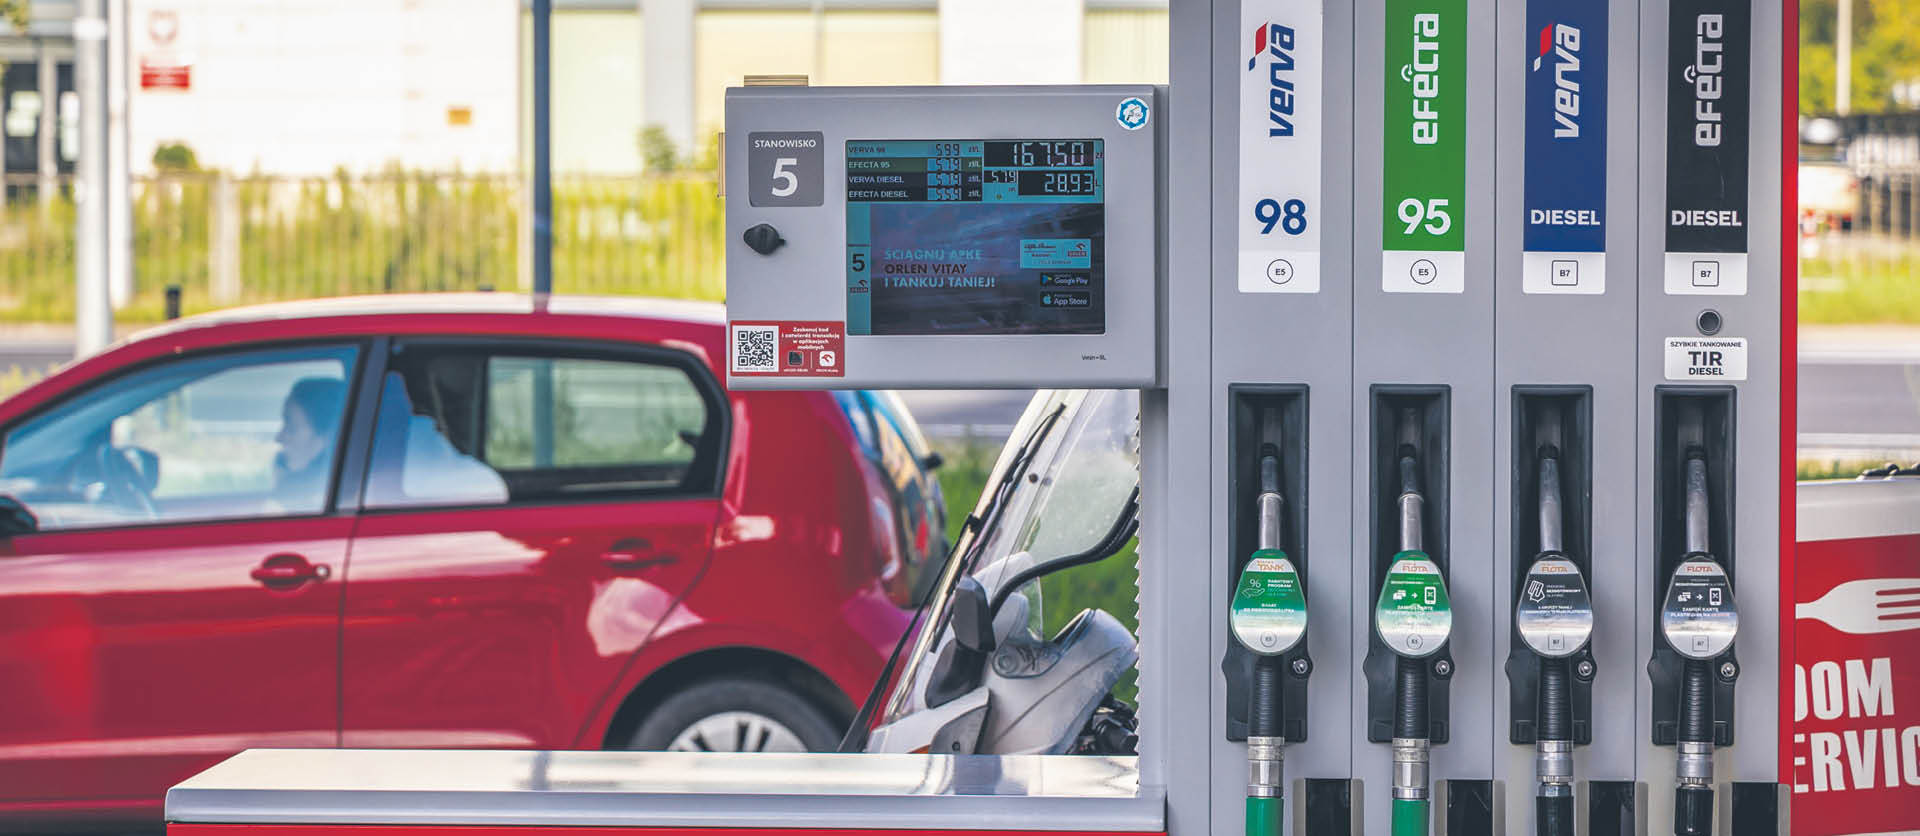 Od 1 stycznia w benzynie kupowanej w Polsce będzie 10 proc., a nie 5 proc. biokomponentów